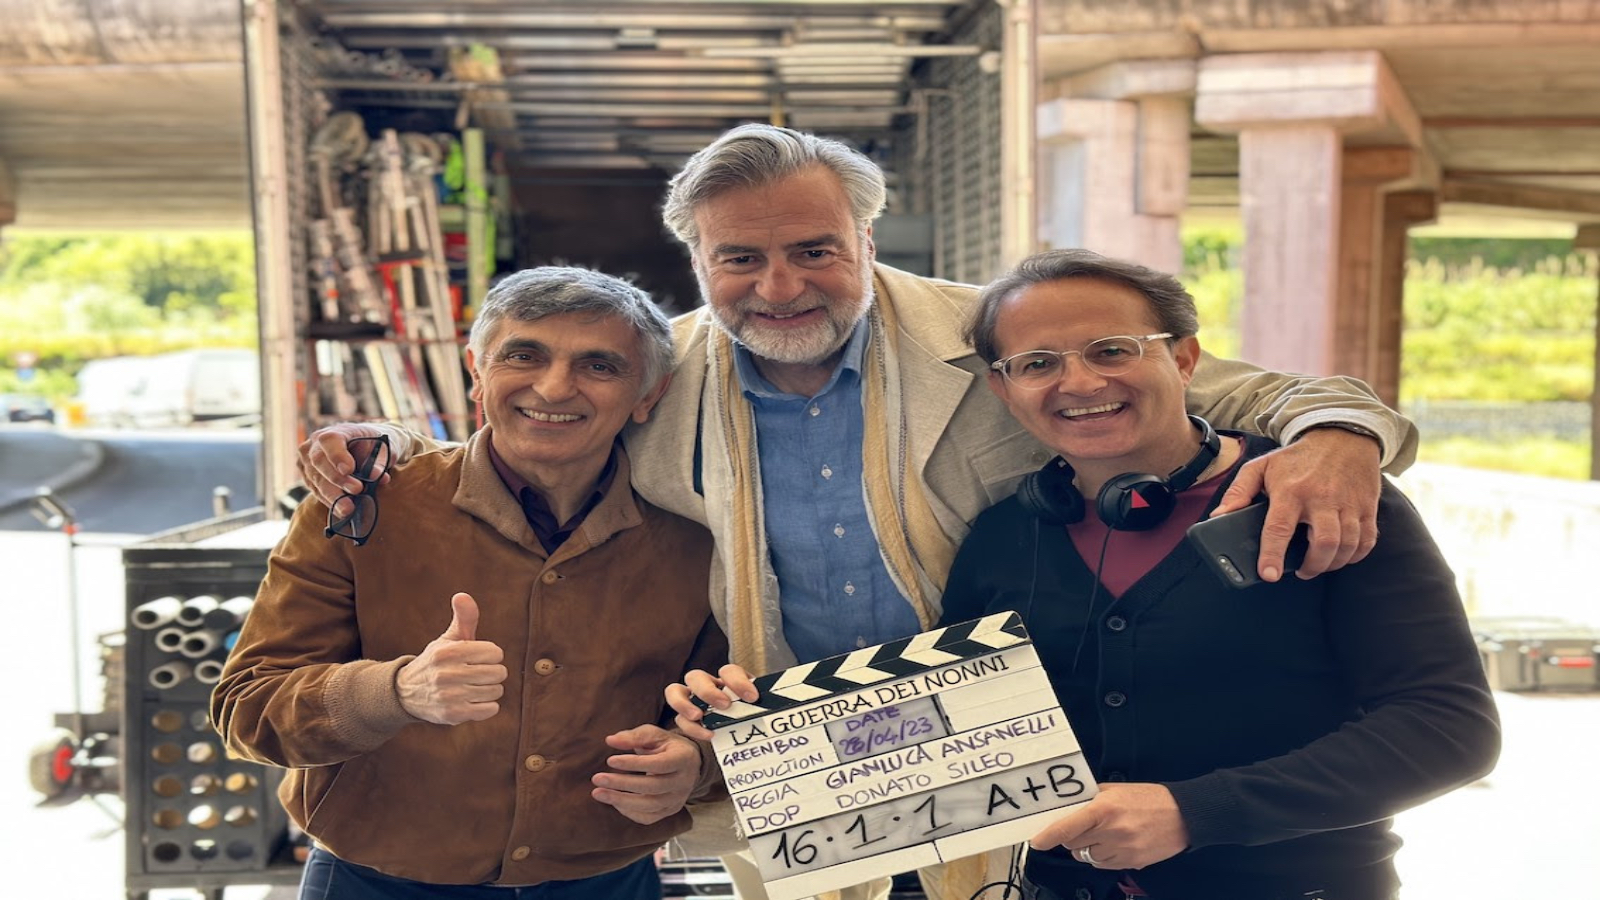 La Guerra dei nonni: iniziate le riprese del film di Gianluca Ansanelli con Vincenzo Salemme e Max Tortora